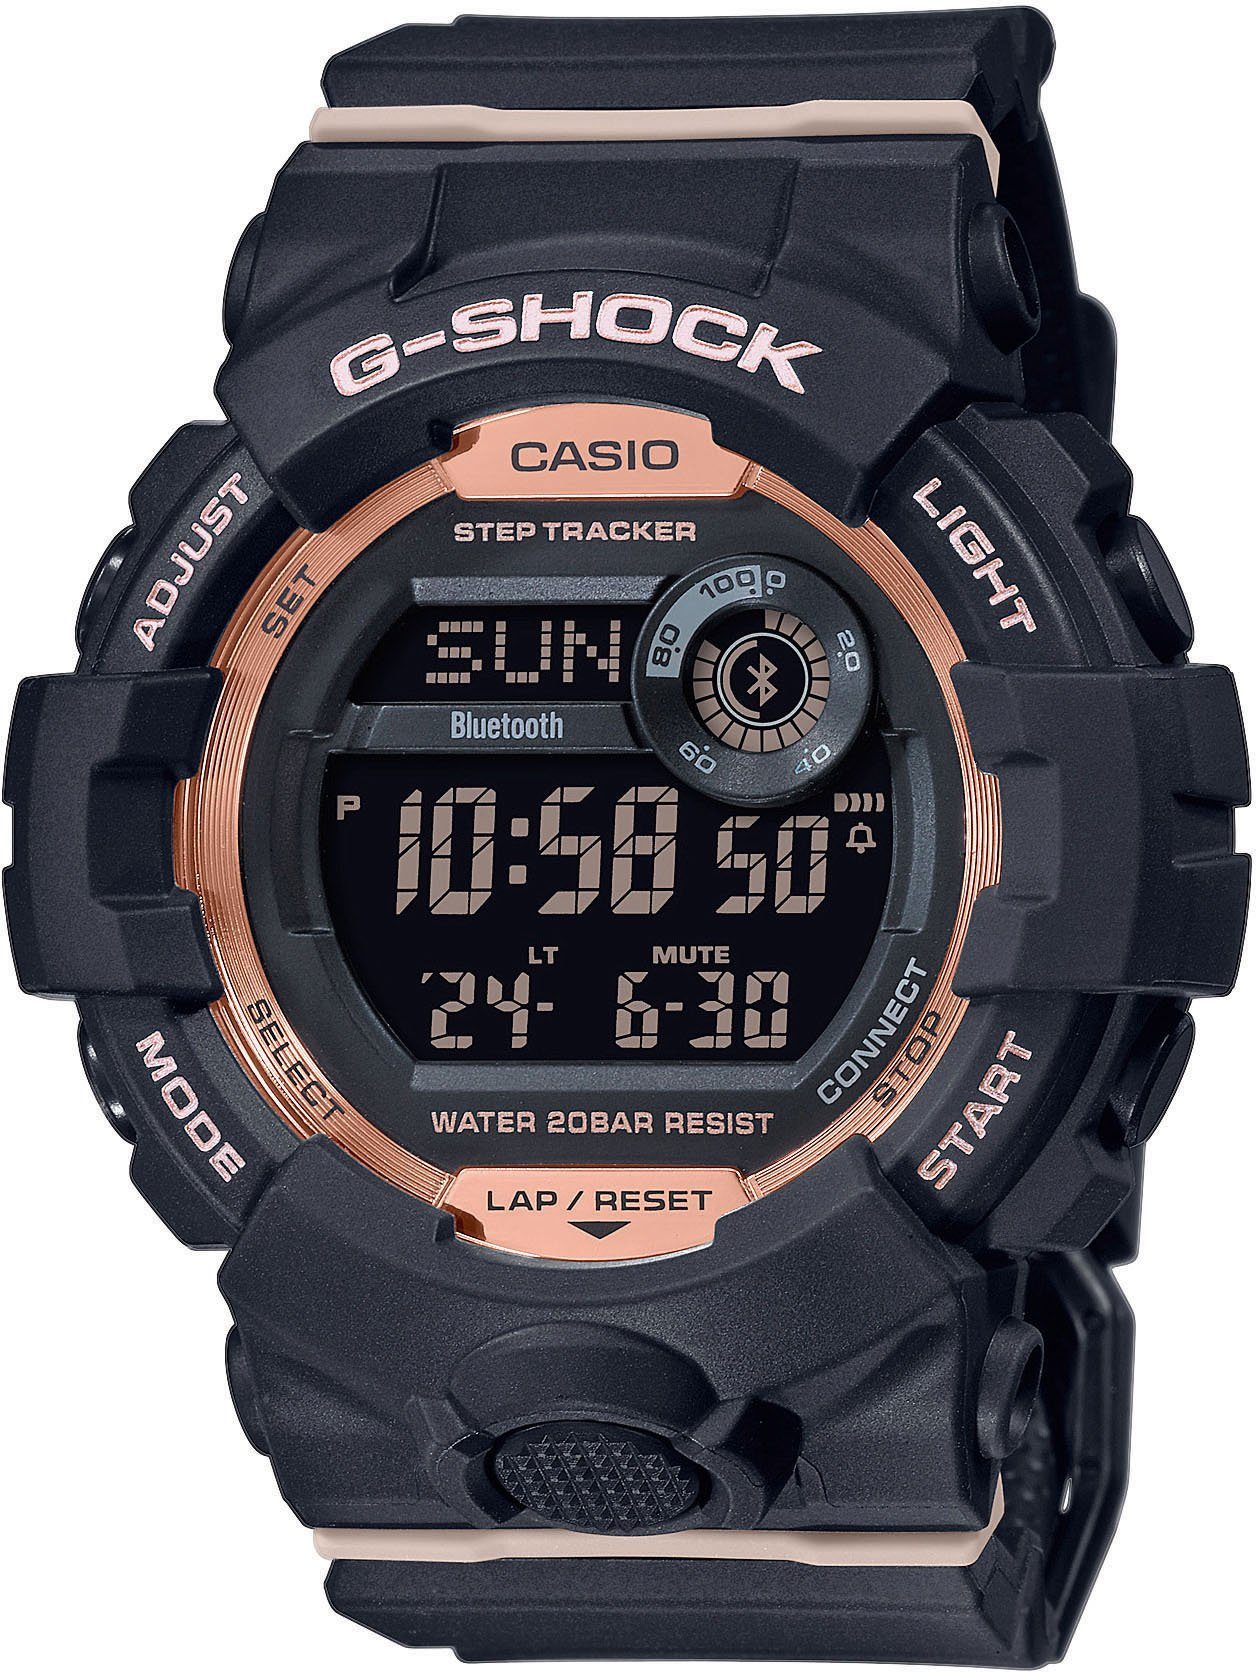 CASIO G-SHOCK GMD-B800-1ER Smartwatch, Armbanduhr, Damen, Herren, Schrittzähler, Timer, Android, iOS